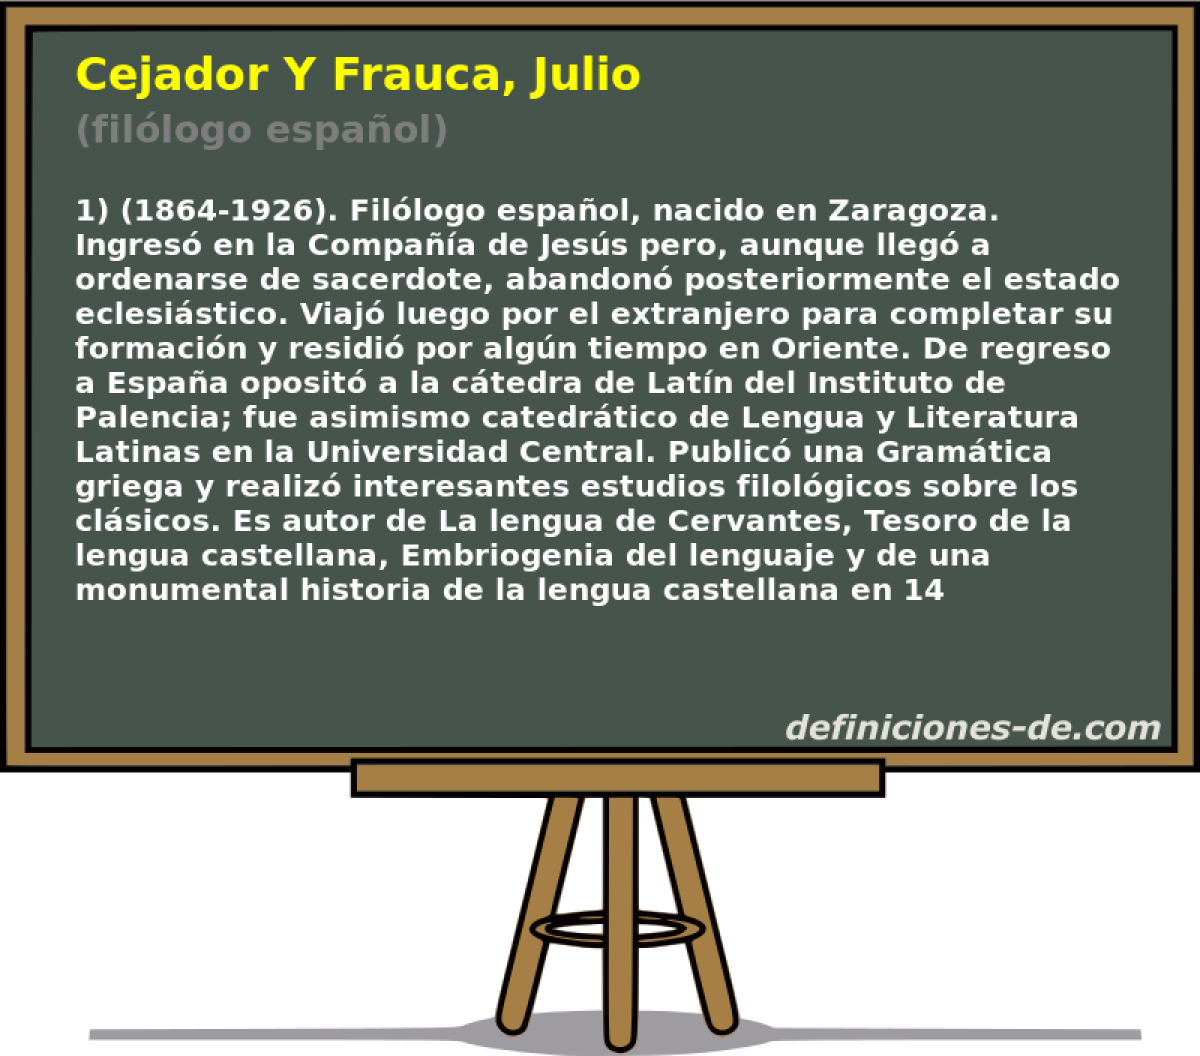 Cejador Y Frauca, Julio (fillogo espaol)